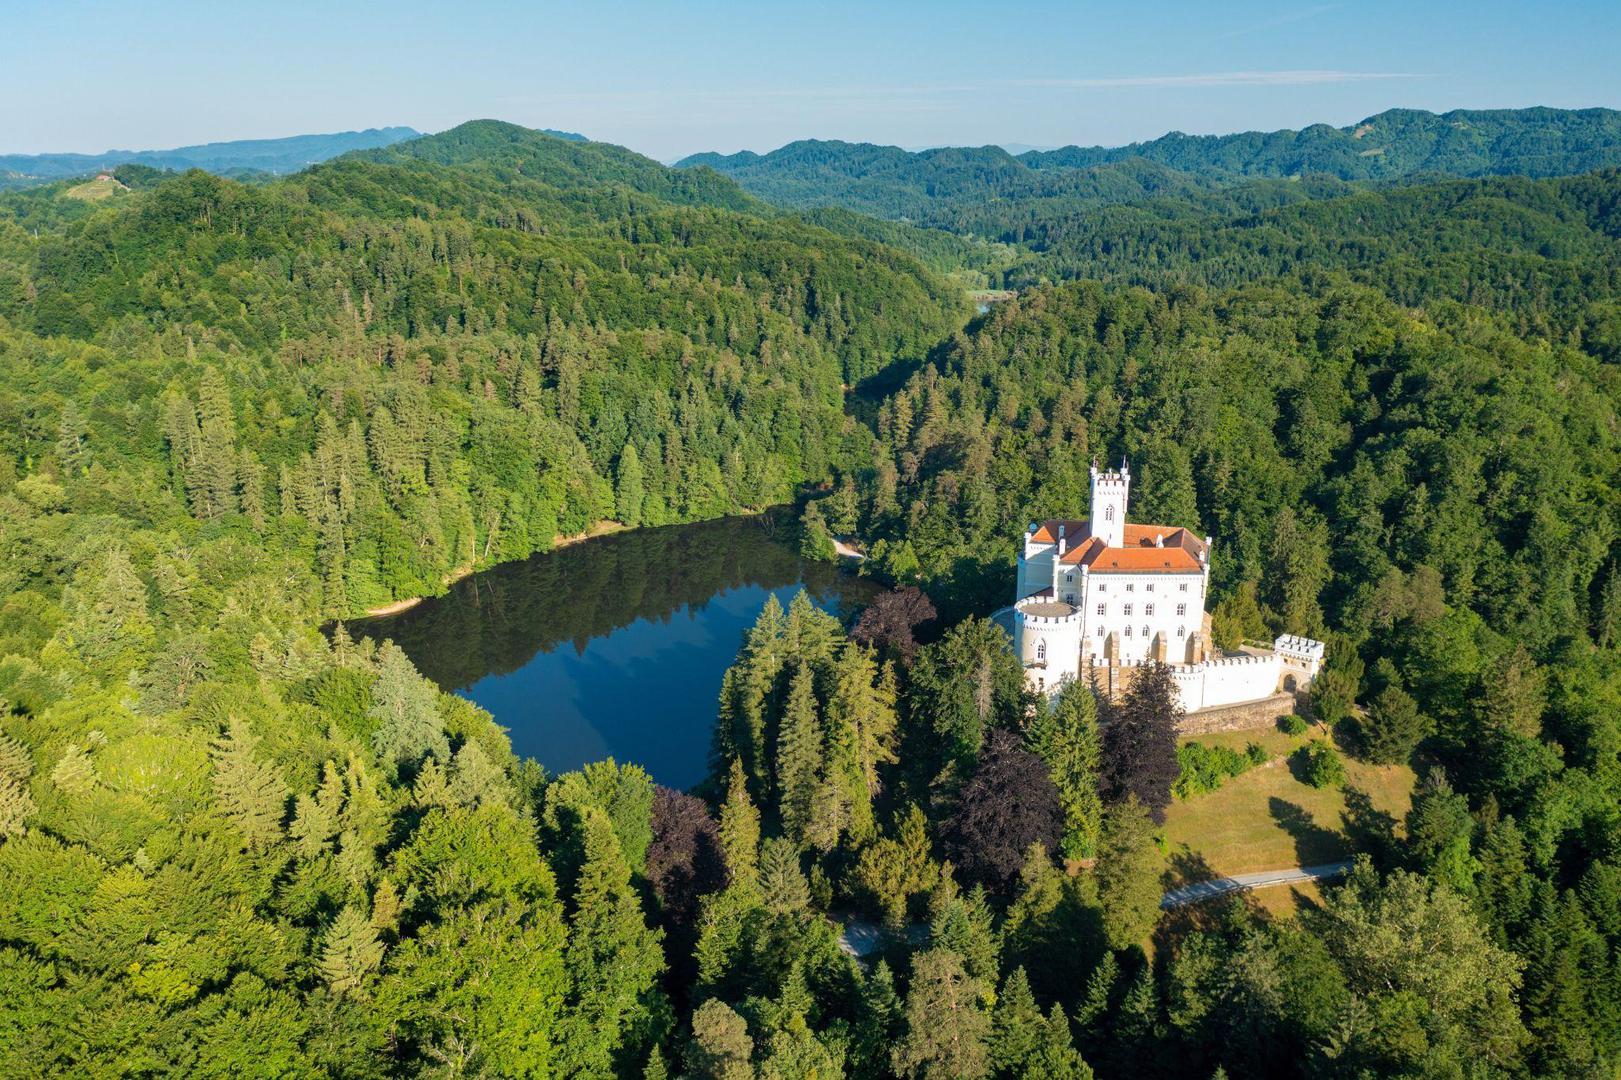 Njemačka, Švicarska, Belgija? Ne, predivna šuma oko dvorca Trakošćan